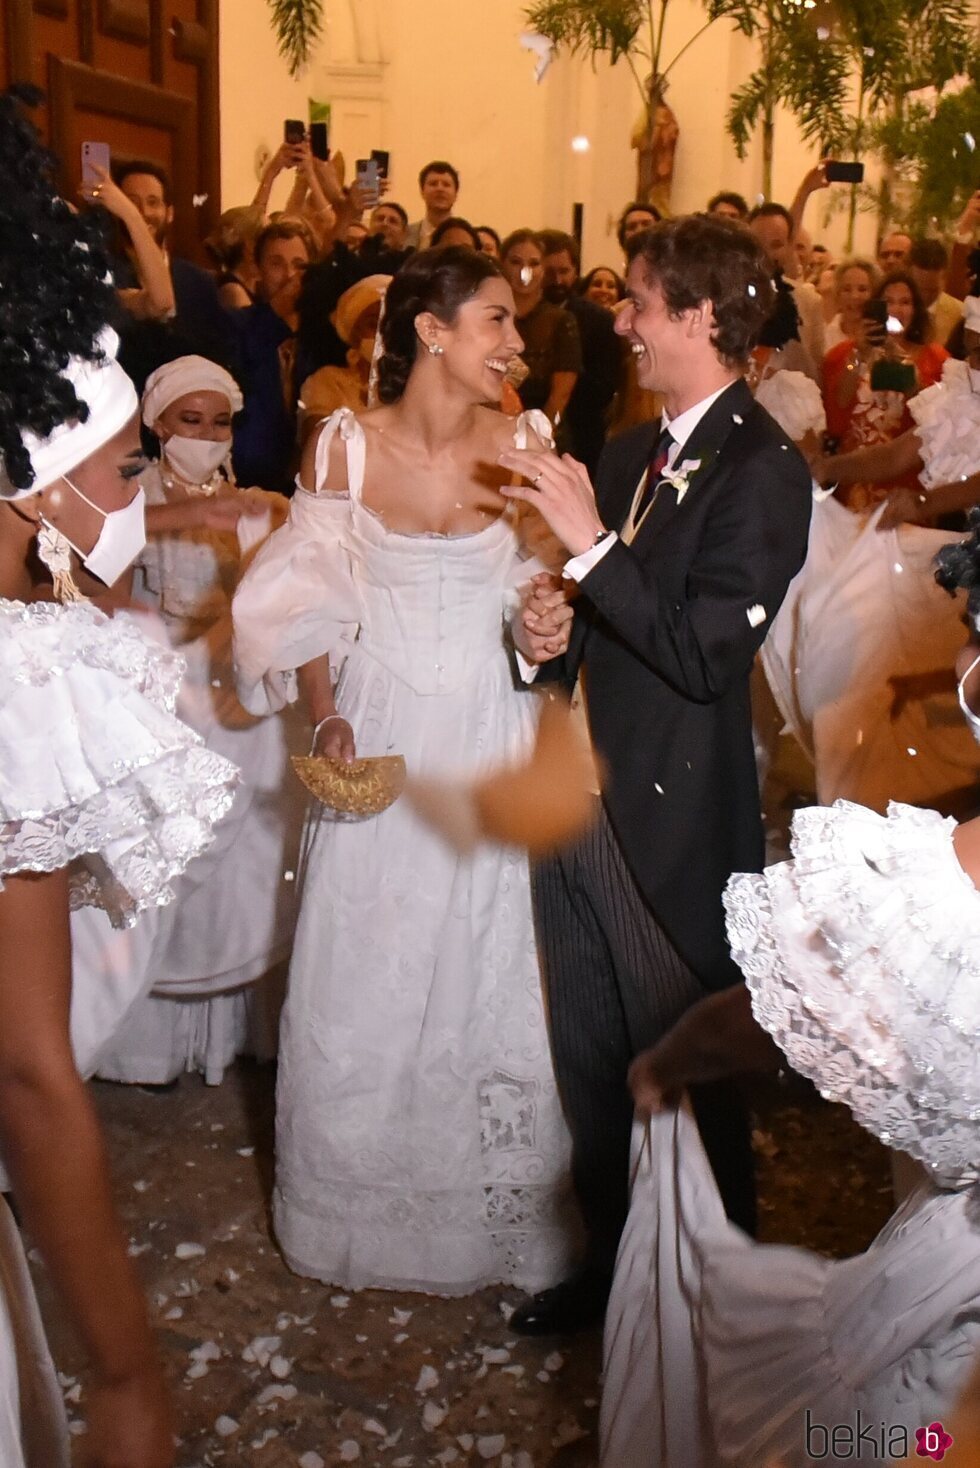 Josef-Emanuel de Liechtenstein y Claudia Echavarría en su boda